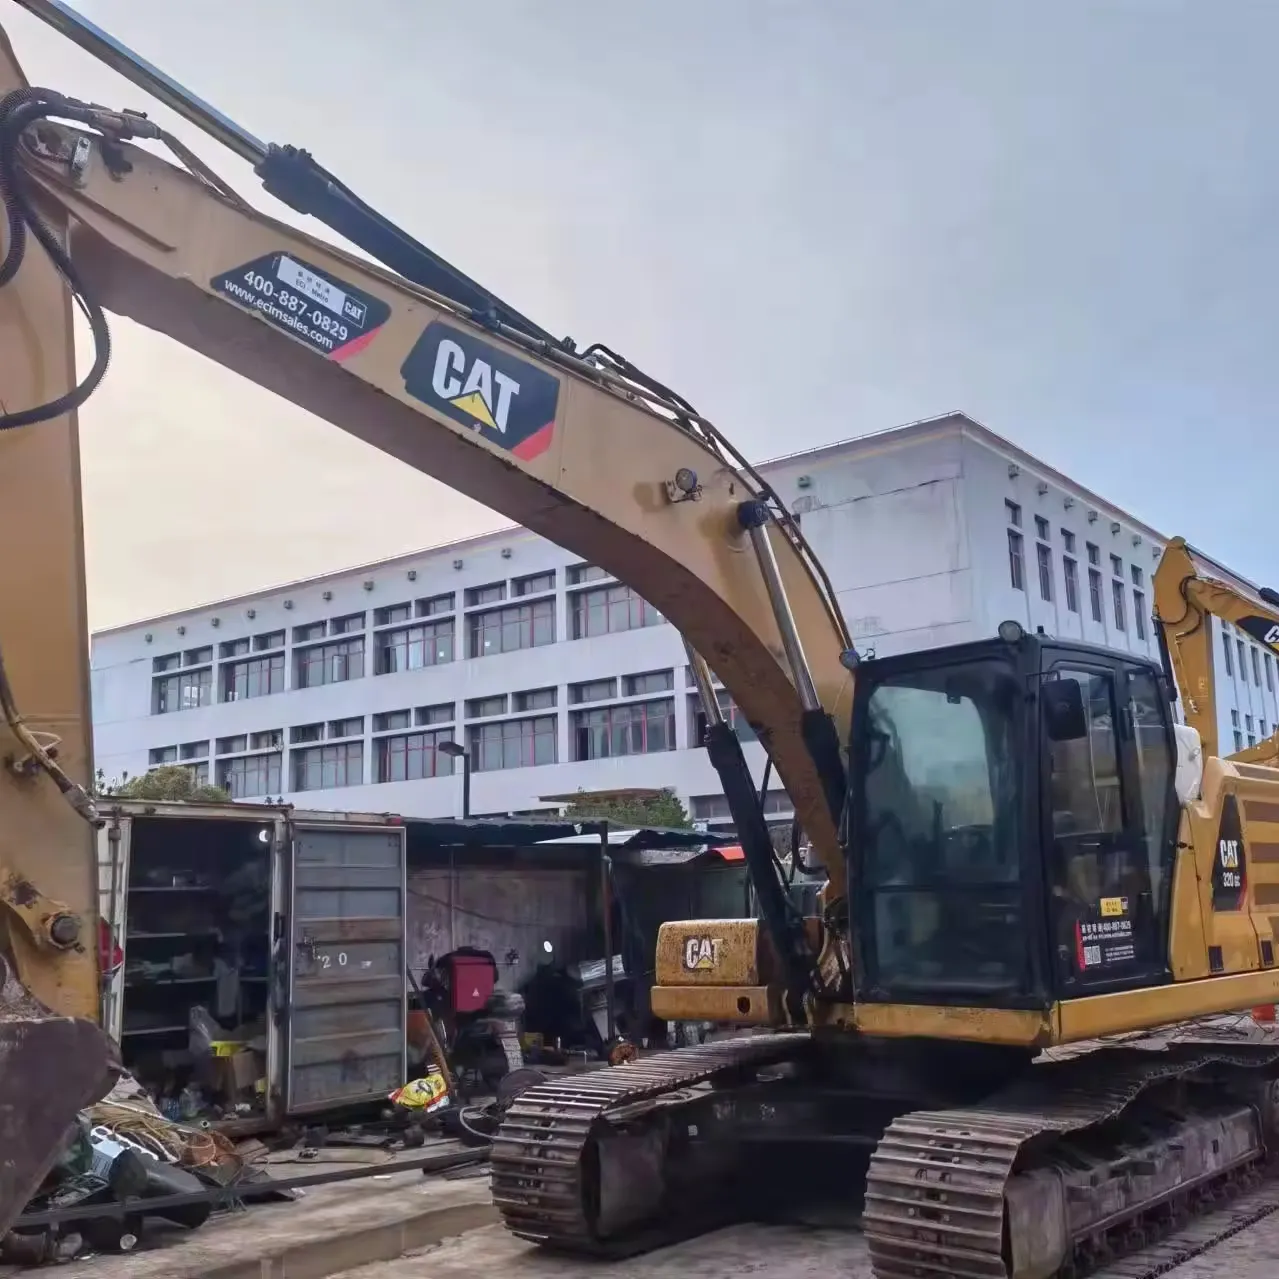 Escavadeira CAT 320GC com motor C4.4 4 cilindros 320 gc Máquinas de Construção Caterpillar usadas em condições originais 2019 excelente